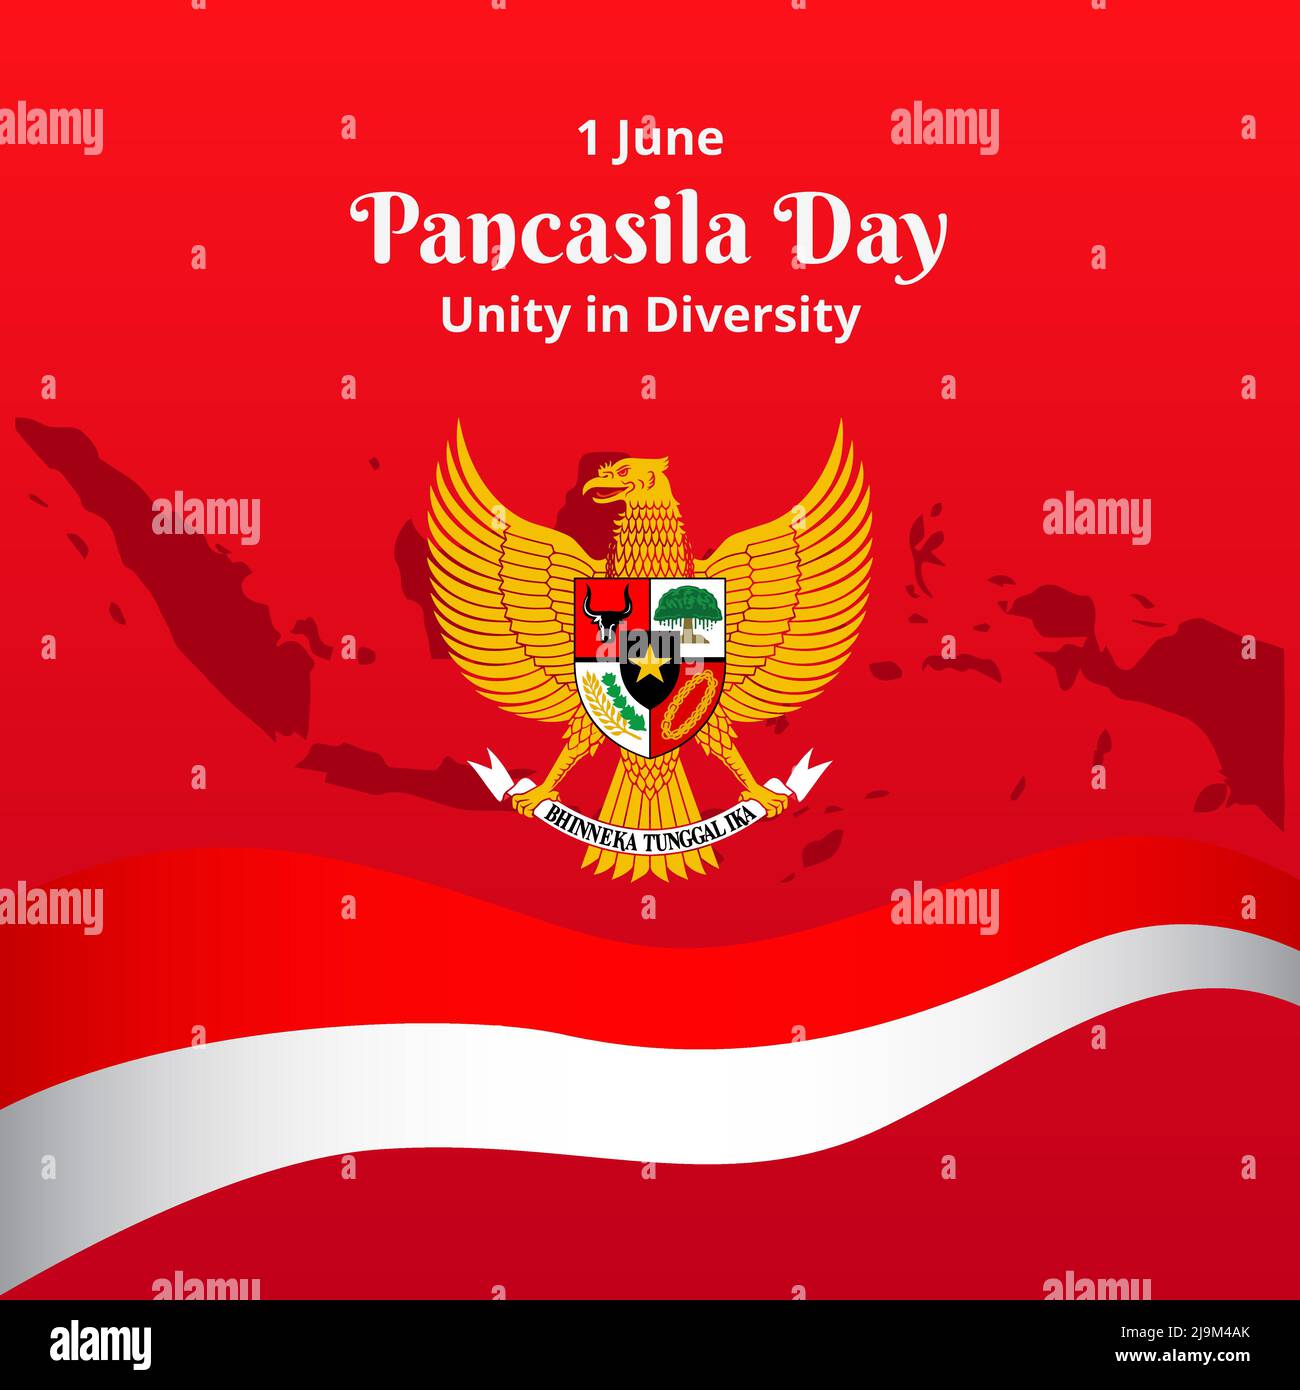 Giorno di Pancasila 1 giugno, unità nella diversità. Ideologia indonesiana con Symbol Bird Garuda, Indonesia Island, e Flag Red White. Vettore Illustrazione Nation Illustrazione Vettoriale